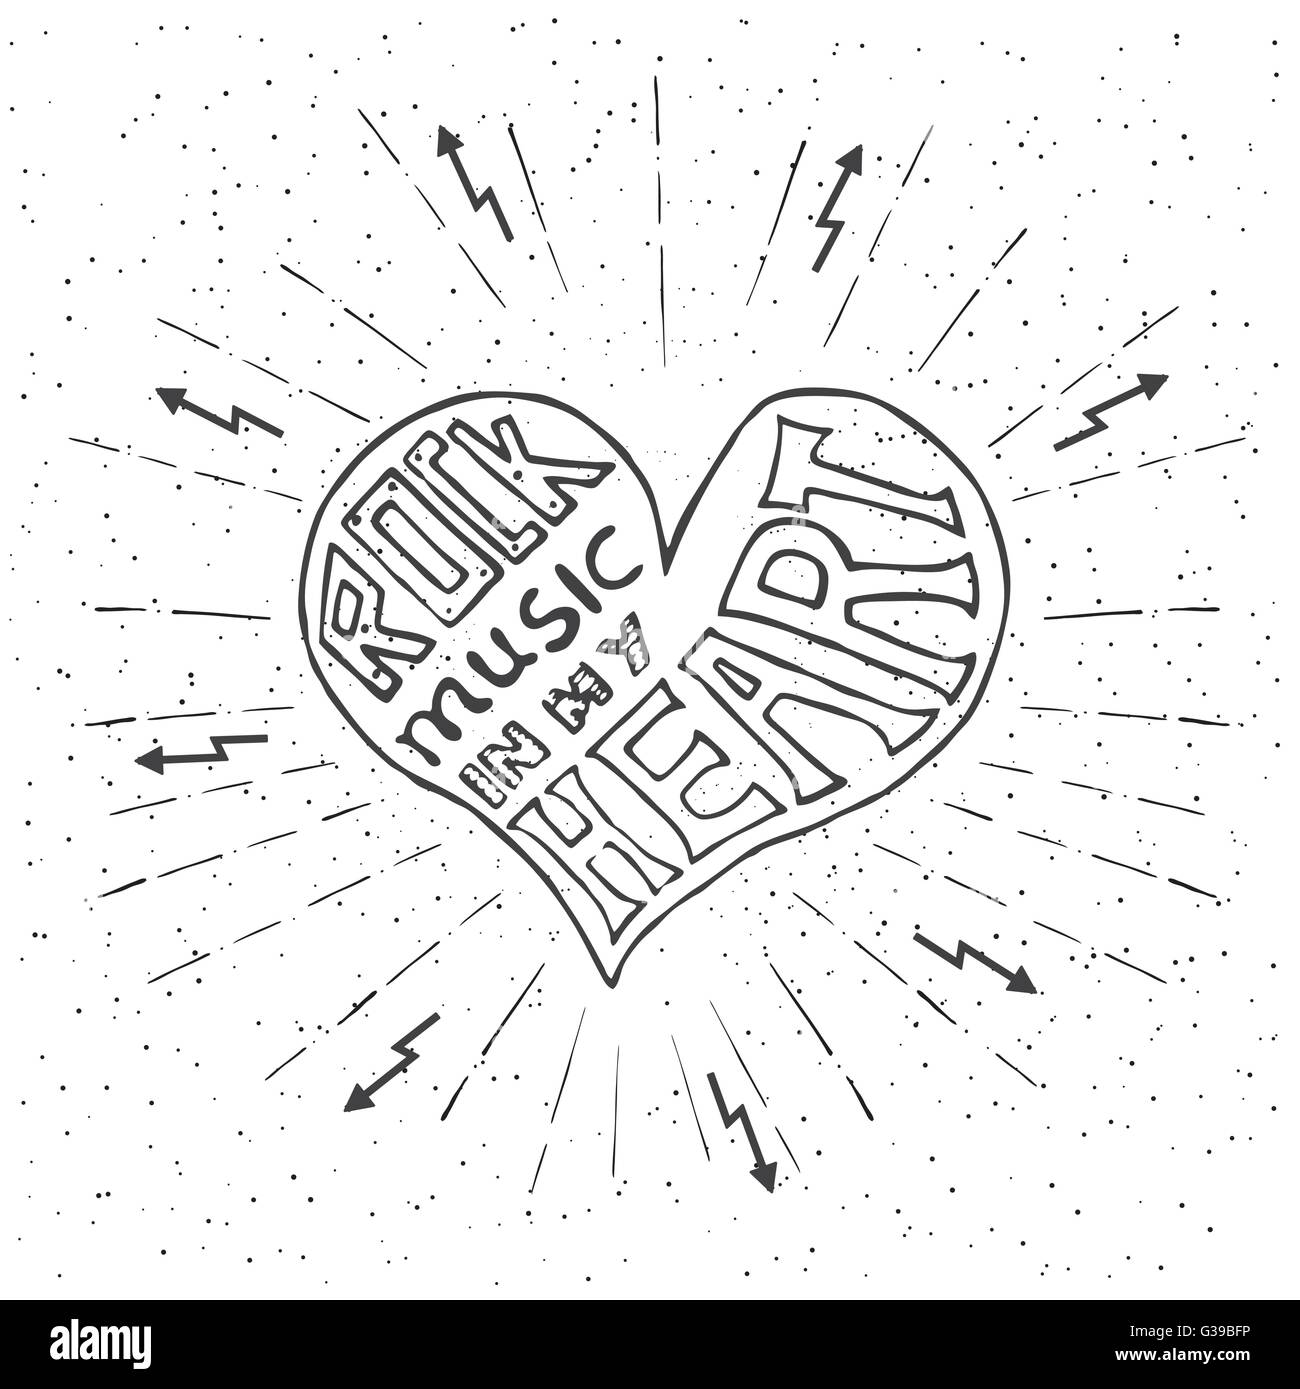 La musique rock dans mon coeur. Design lettrage dessiné à la main avec coeur. Typographie concept pour conception de t-shirt ou un site web. Illustration de Vecteur